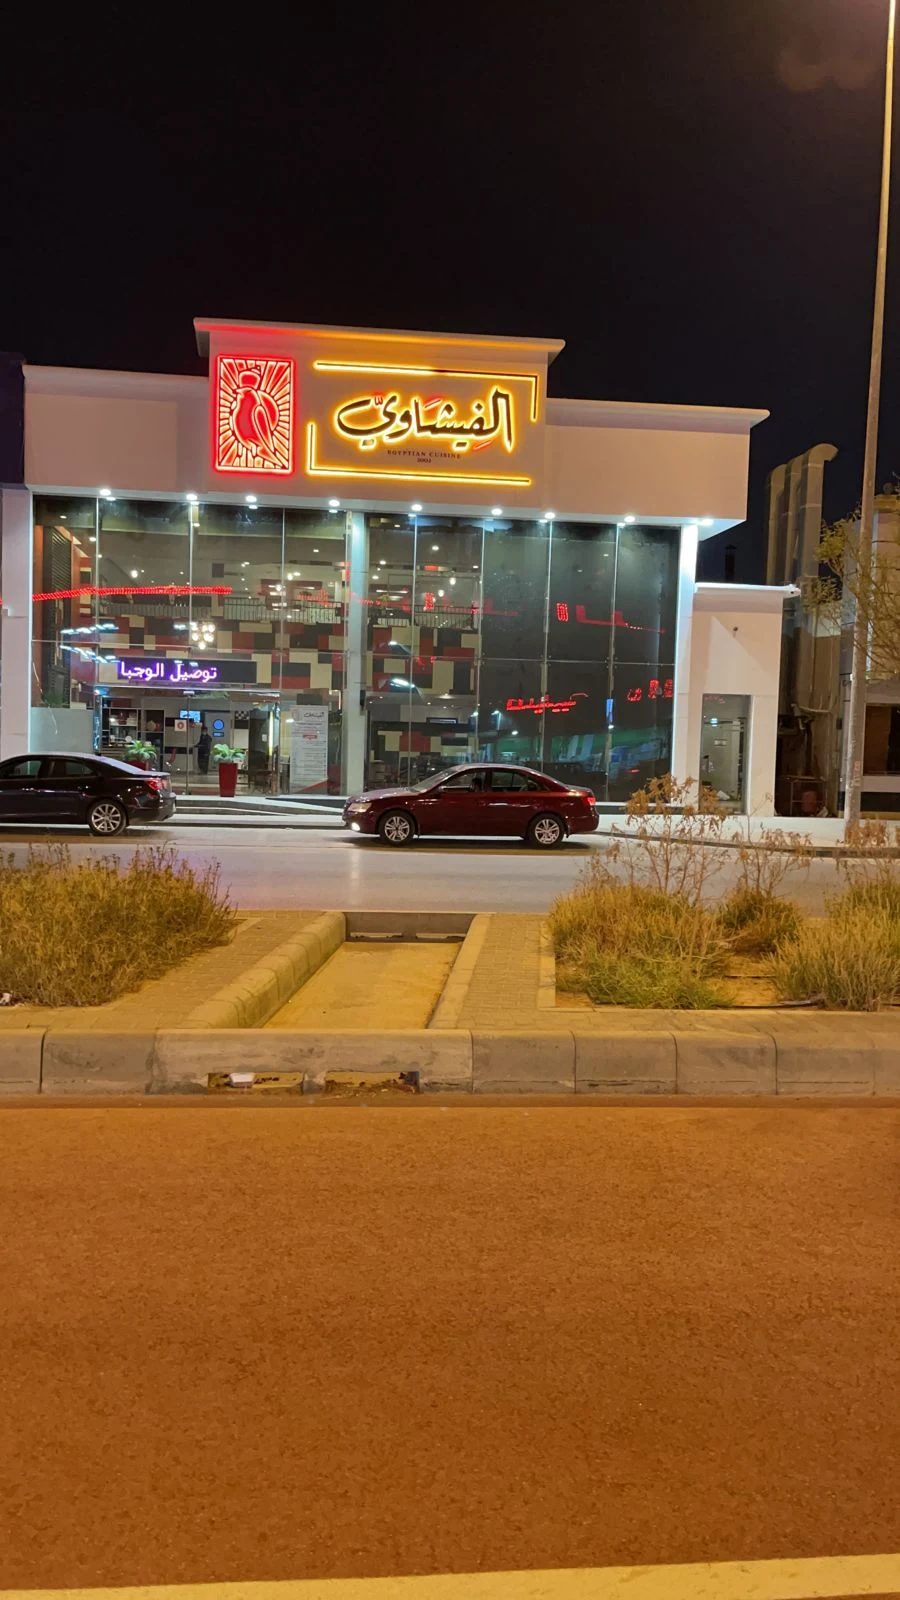  مطعم الفيشاوي الرياض مطعم مأكولات مصرية